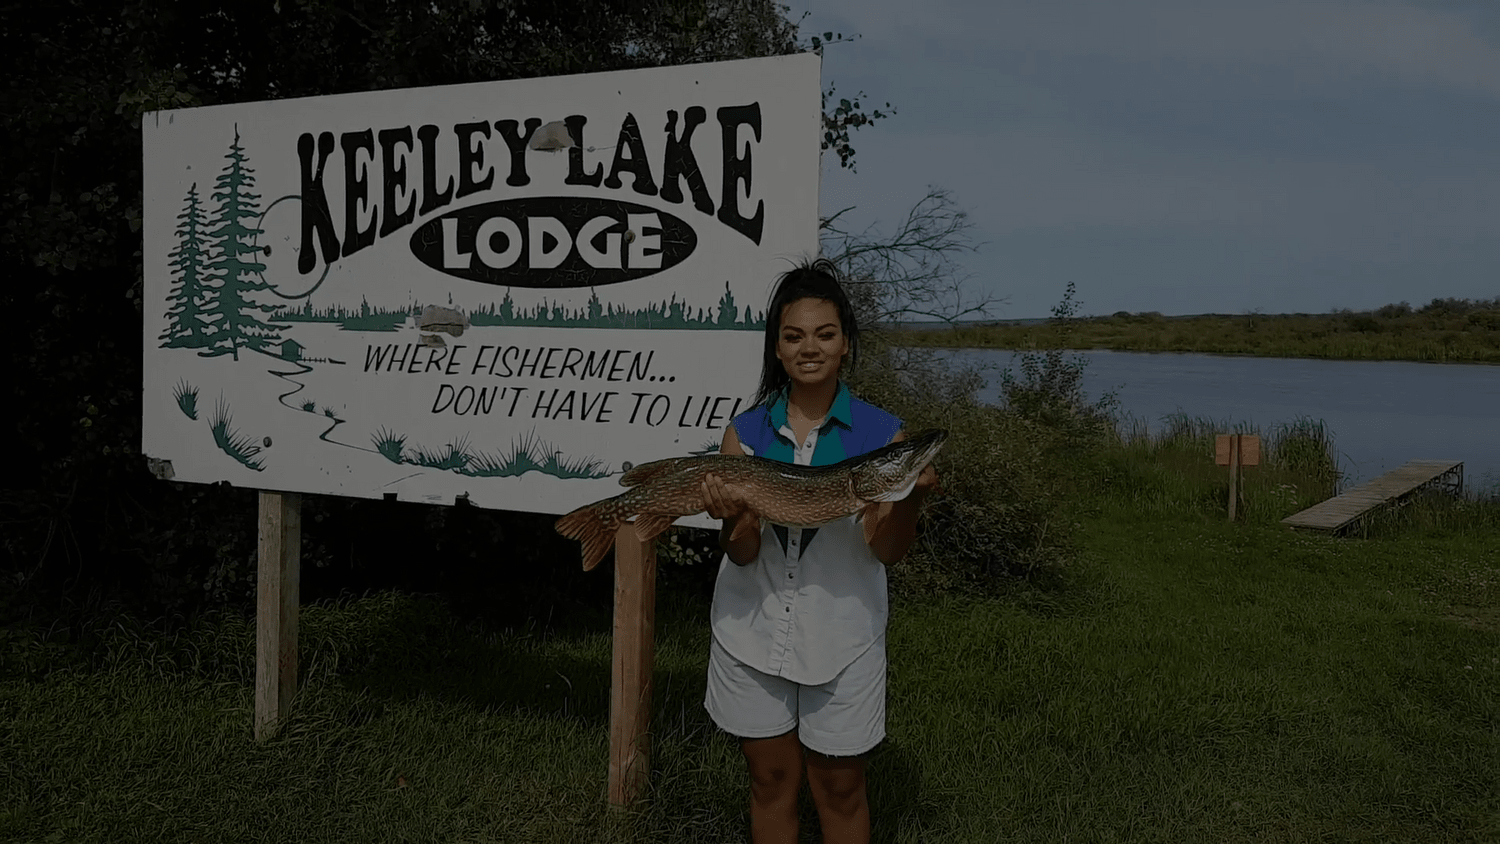 Keeley Lake